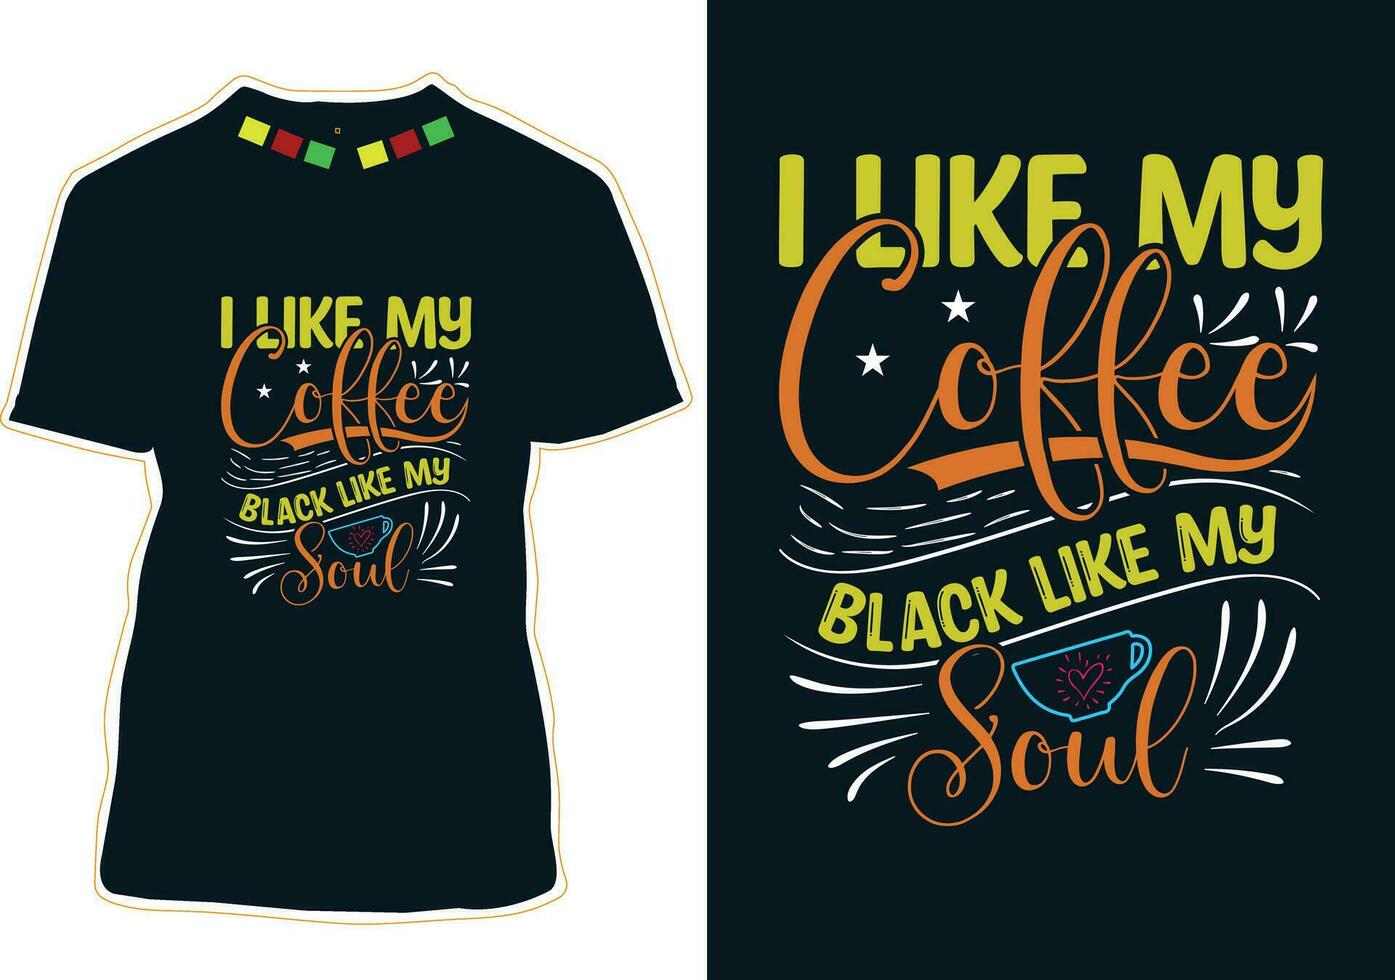 jag tycka om min kaffe svart tycka om min själ, internationell kaffe dag t-shirt design vektor